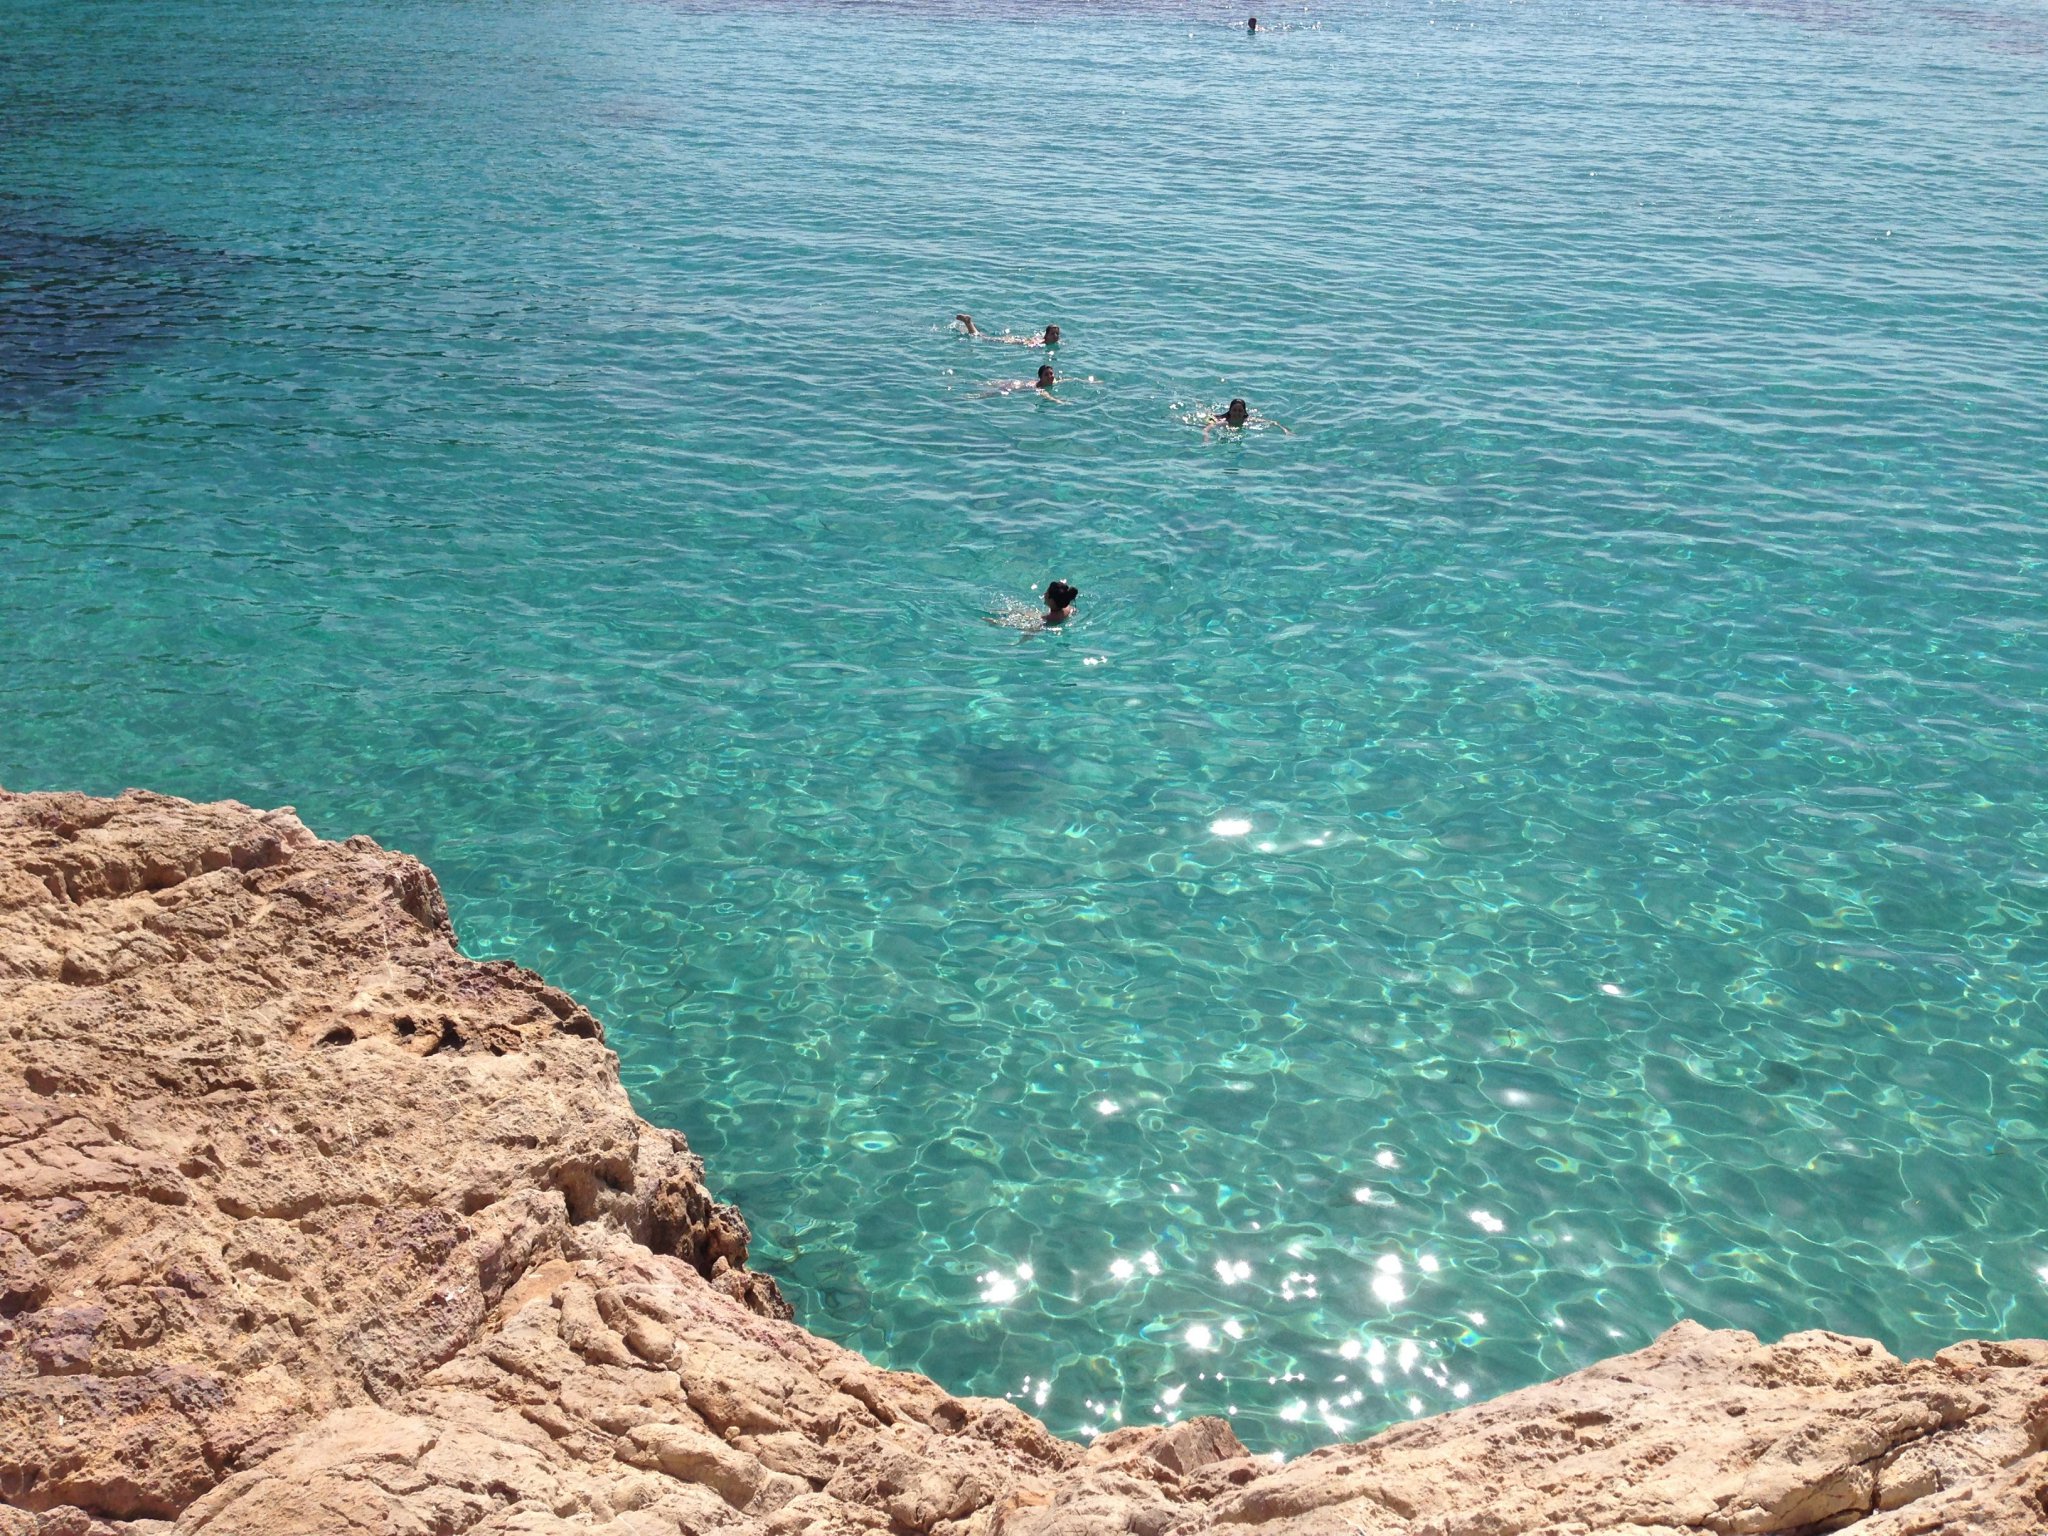 スペイン編 Ibiza島ヌーディストビーチに行ってきました インターネットビジネスで長期的な資産構築への道